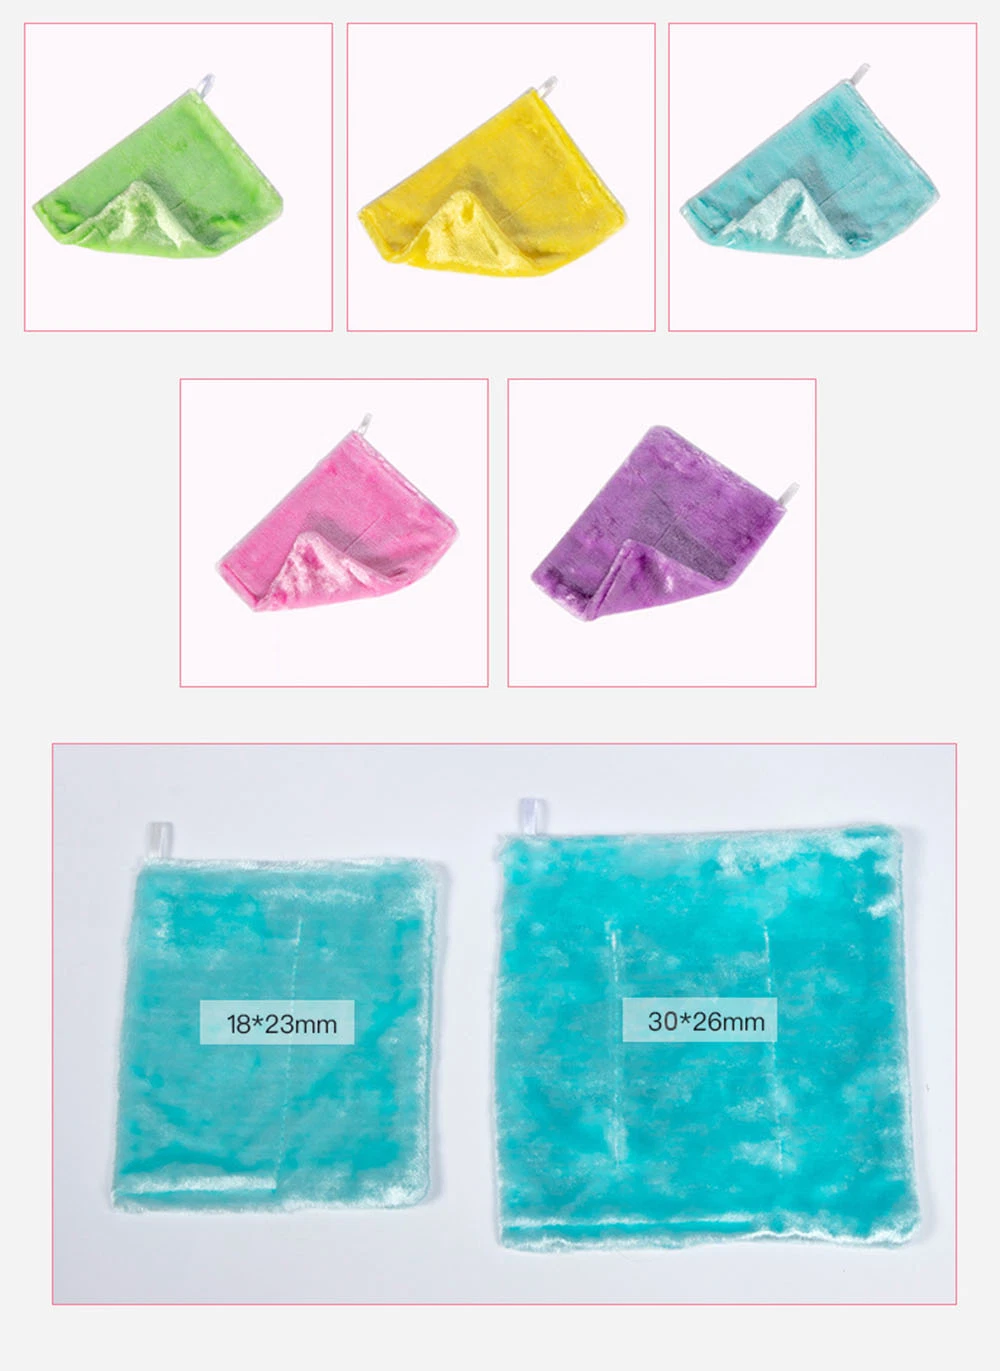 Bulk Buy Wiping Pad Dish Cloth Bathroom Wash Lazy Rags